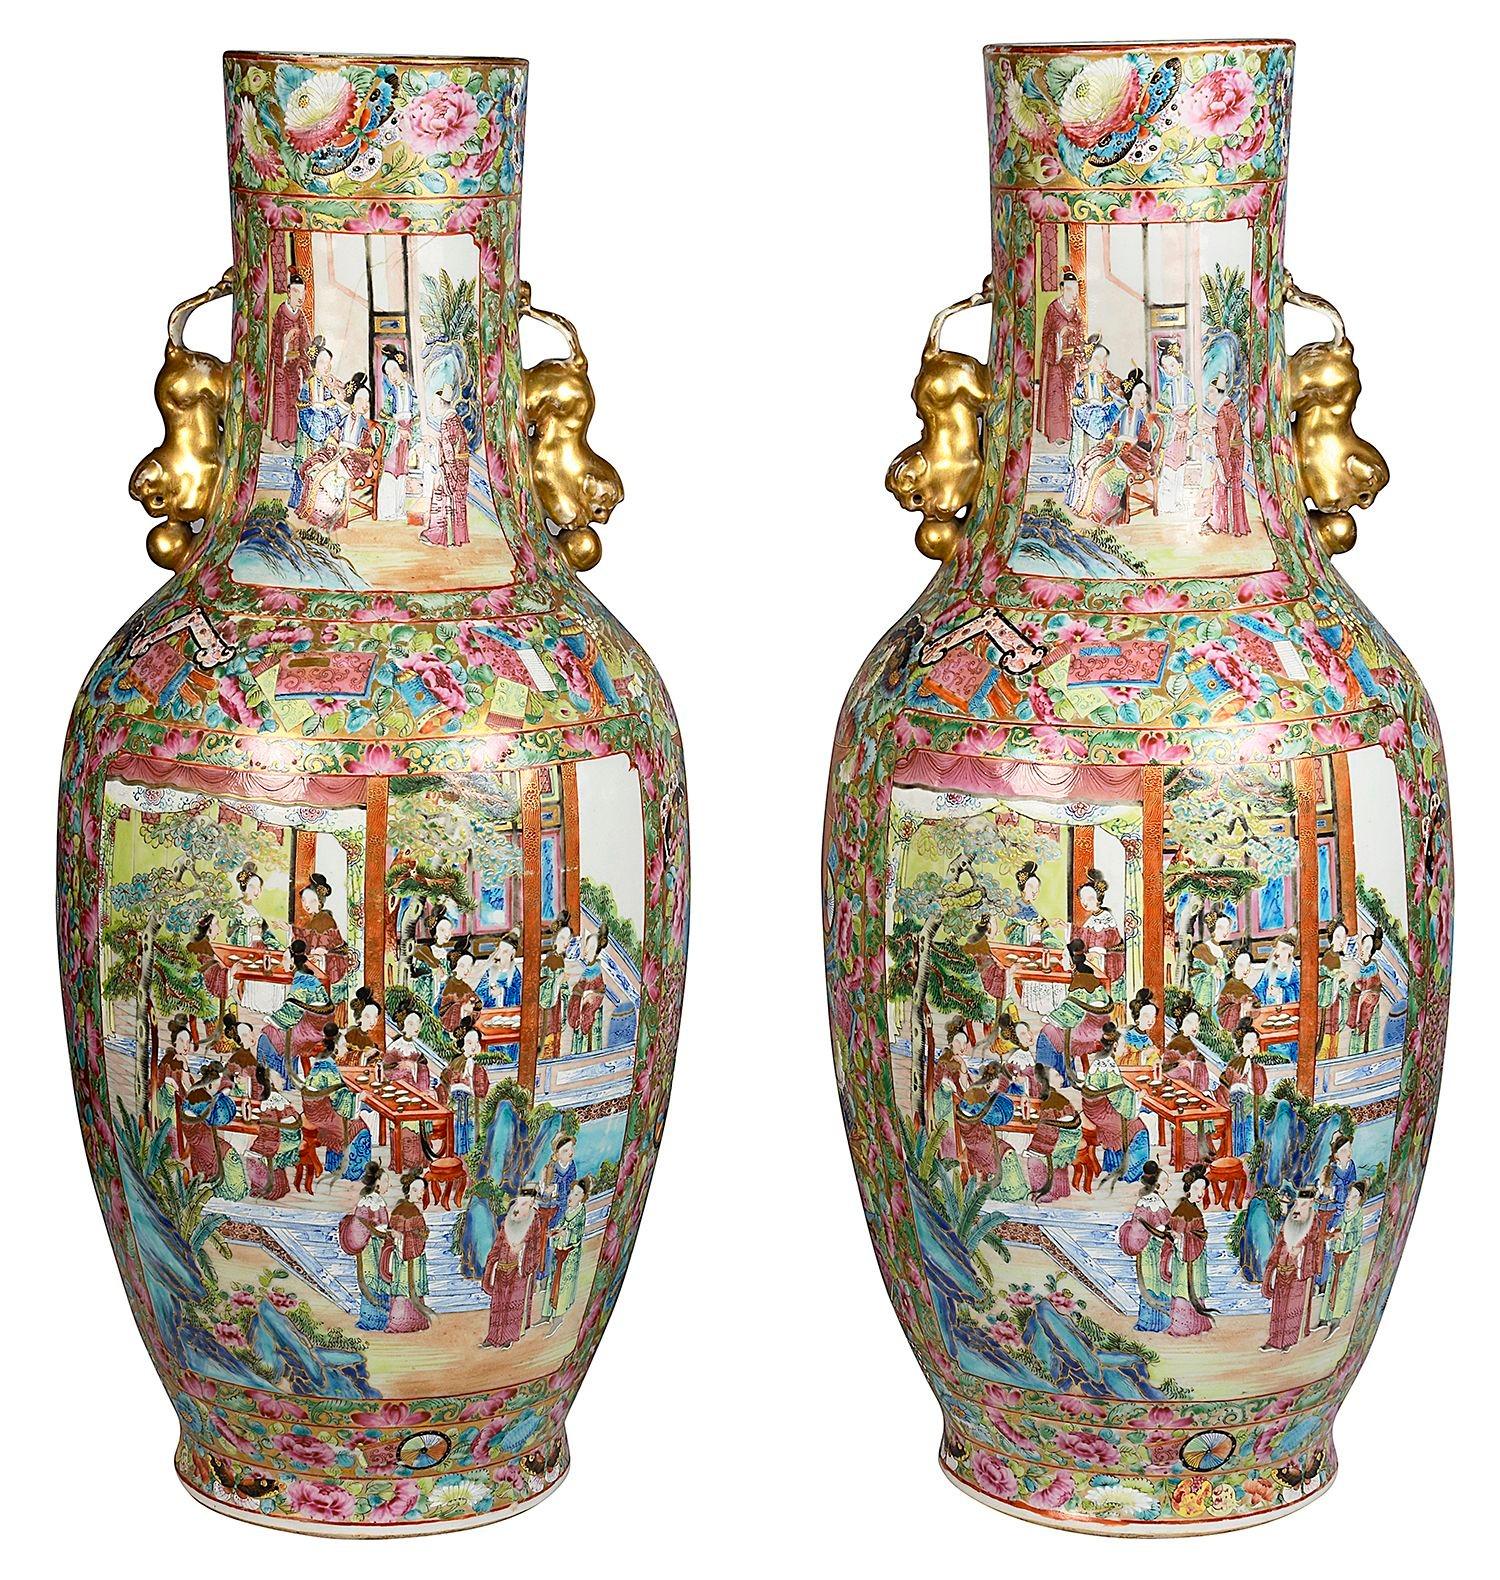 Eine sehr gute Qualität Paar des 19. Jahrhunderts chinesischen Kanton / Rose Medaillon Vasen / Lampen. Jedes mit wundervollen, kräftigen, klassischen Grün- und Rosatönen, Paaren von vergoldeten Foo Dog Griffen. Der Grund ist mit dem traditionellen